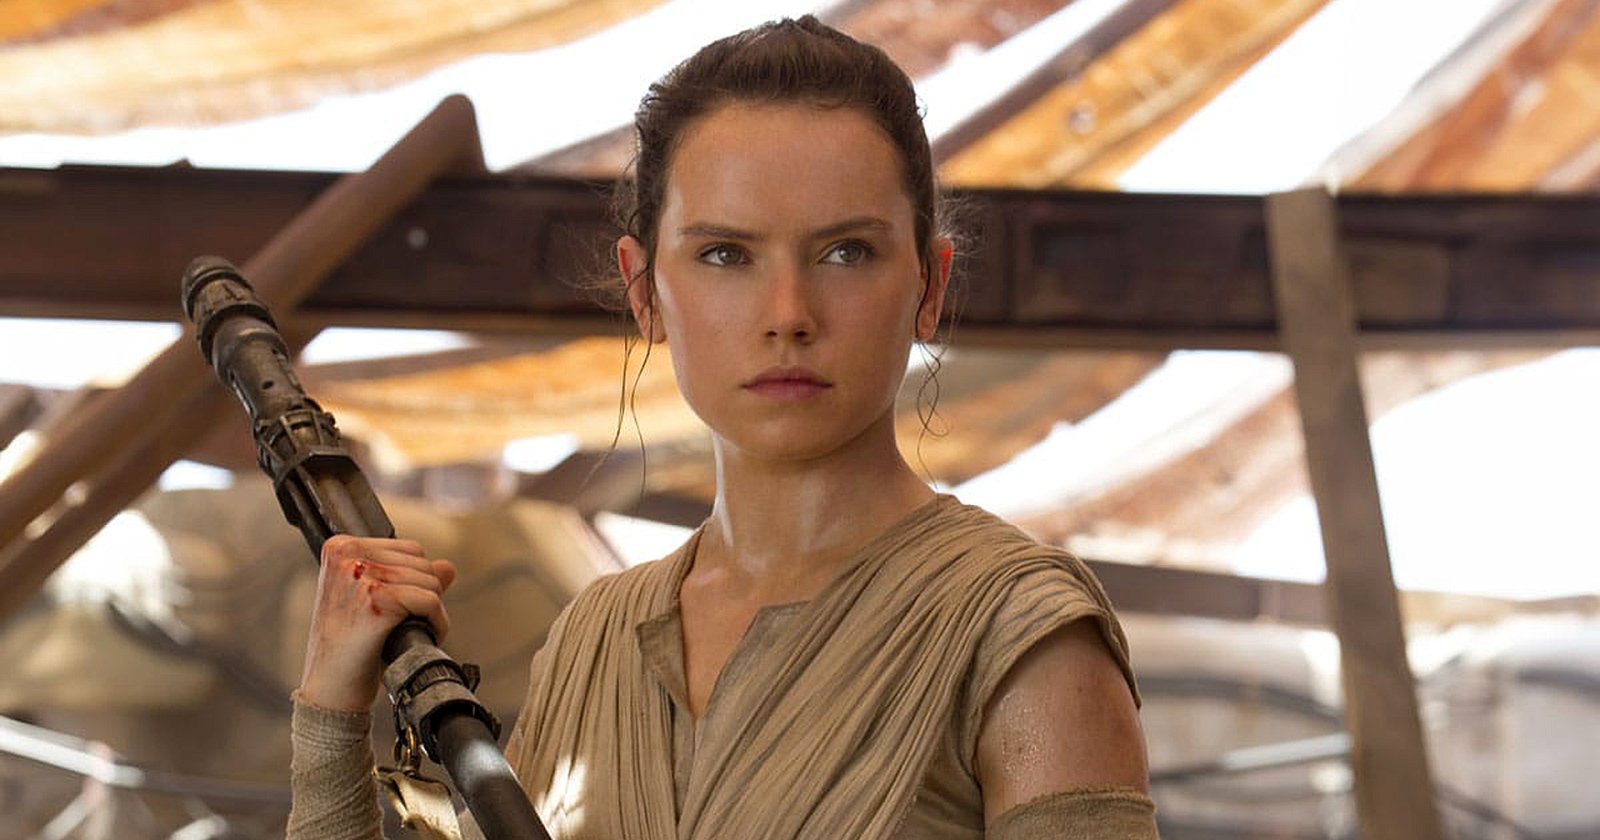 Daisy Ridley ได้เงิน 12.5 ล้านเหรียญ ในการกลับมารับบทนำในแฟรนไชส์ ‘Star Wars’ อีกครั้ง